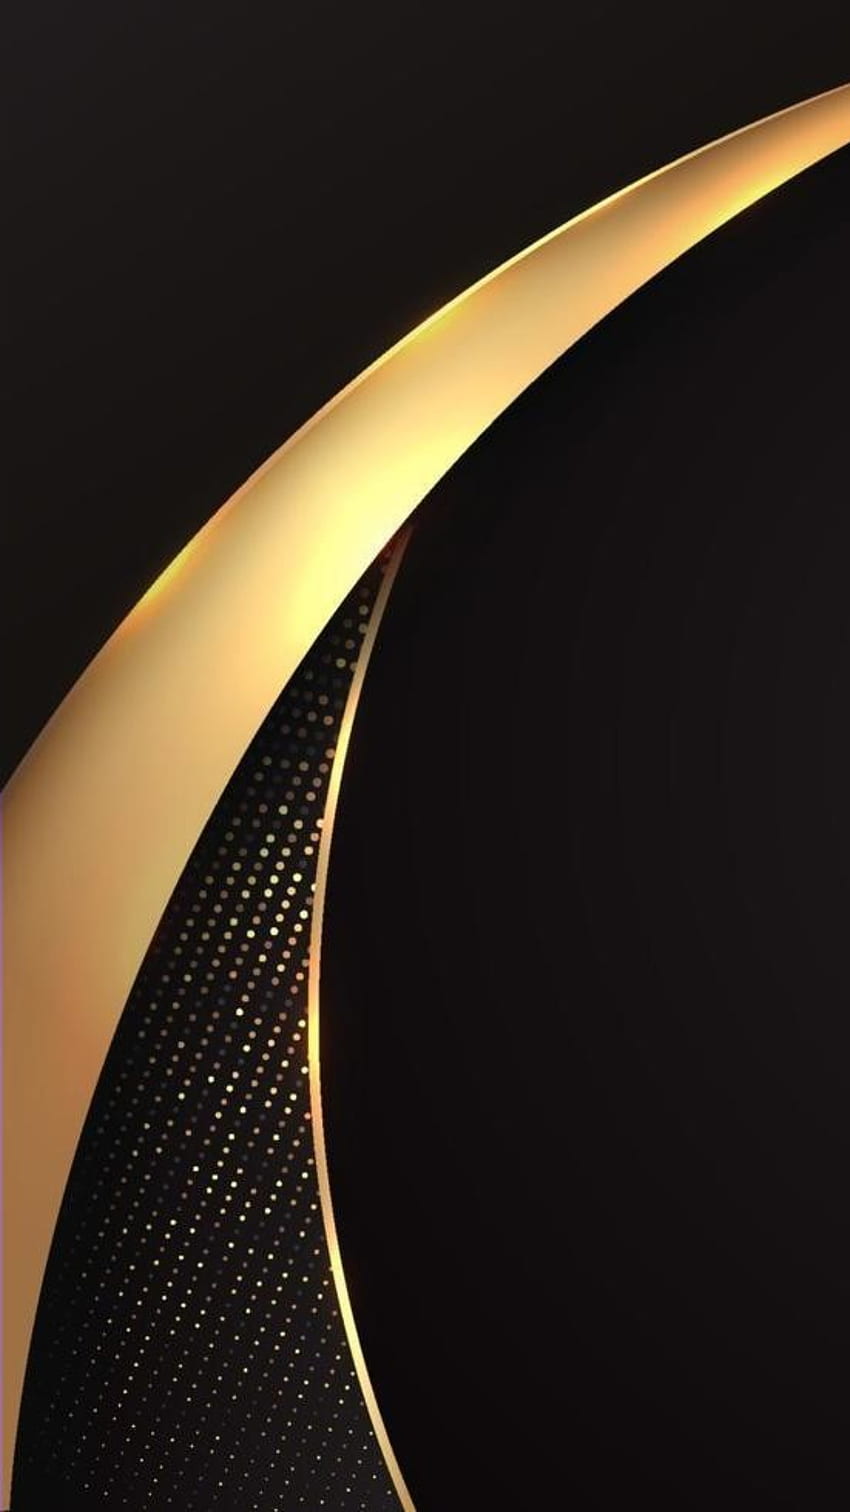 oro negro amoled nuevo, digital, ondas, curvas, moderno, simetría, textura, diseño, geométrico, patrón fondo de pantalla del teléfono